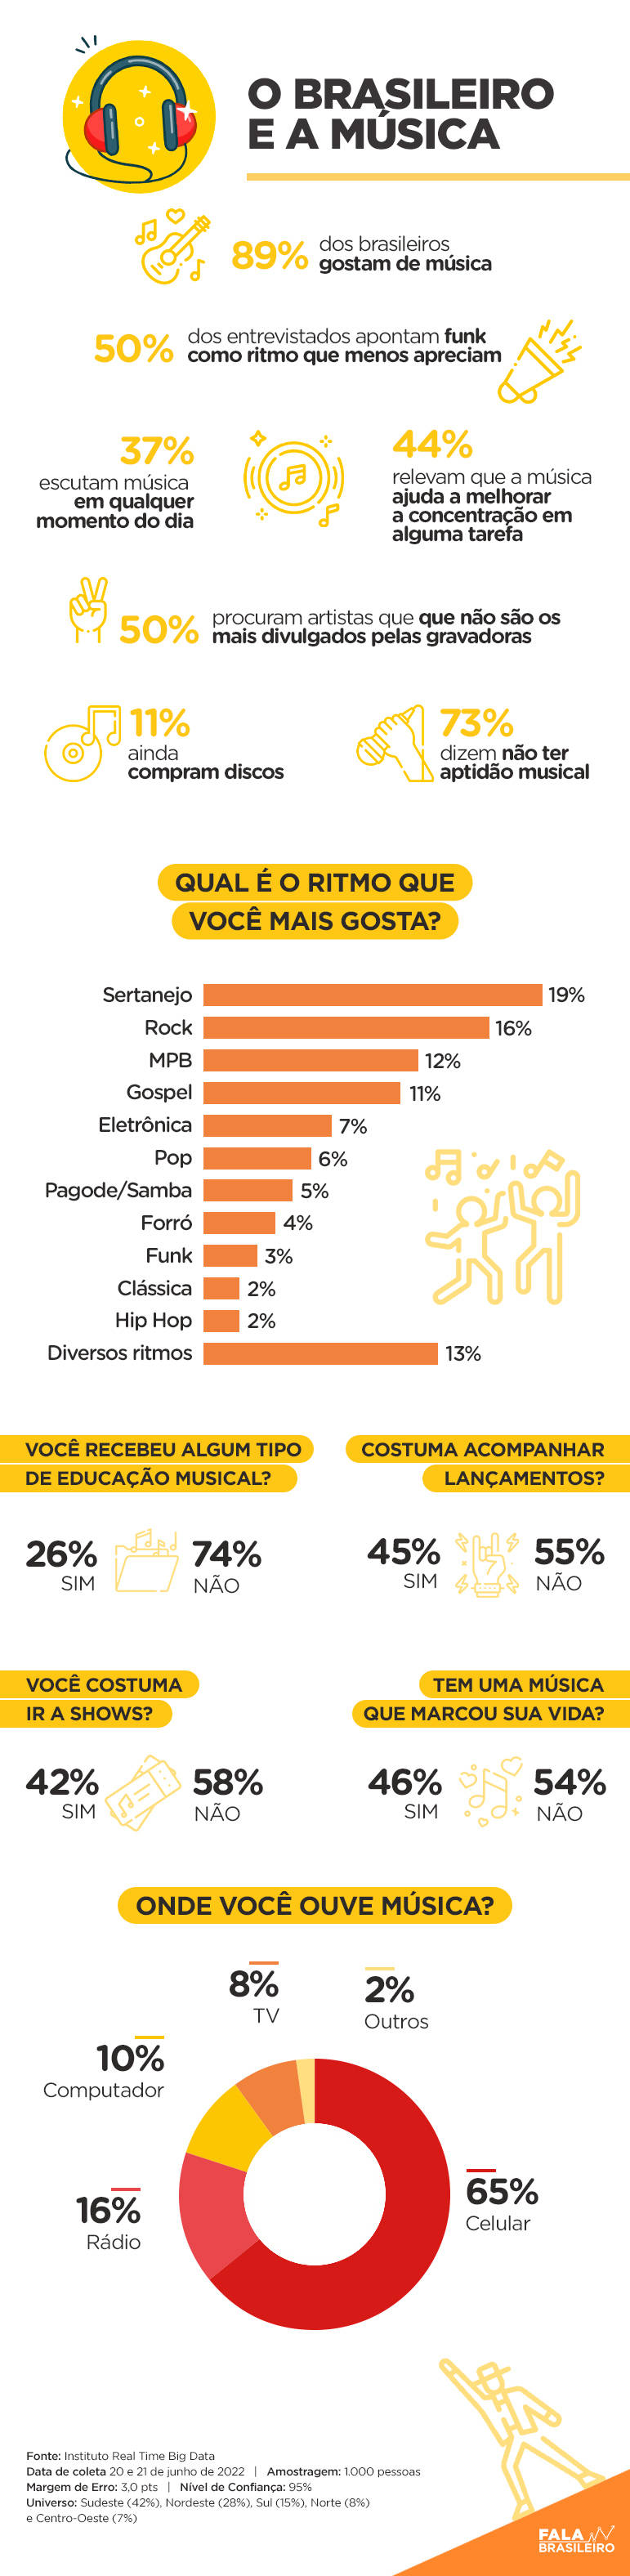 Estudo mostra a relação do brasileiro com a música